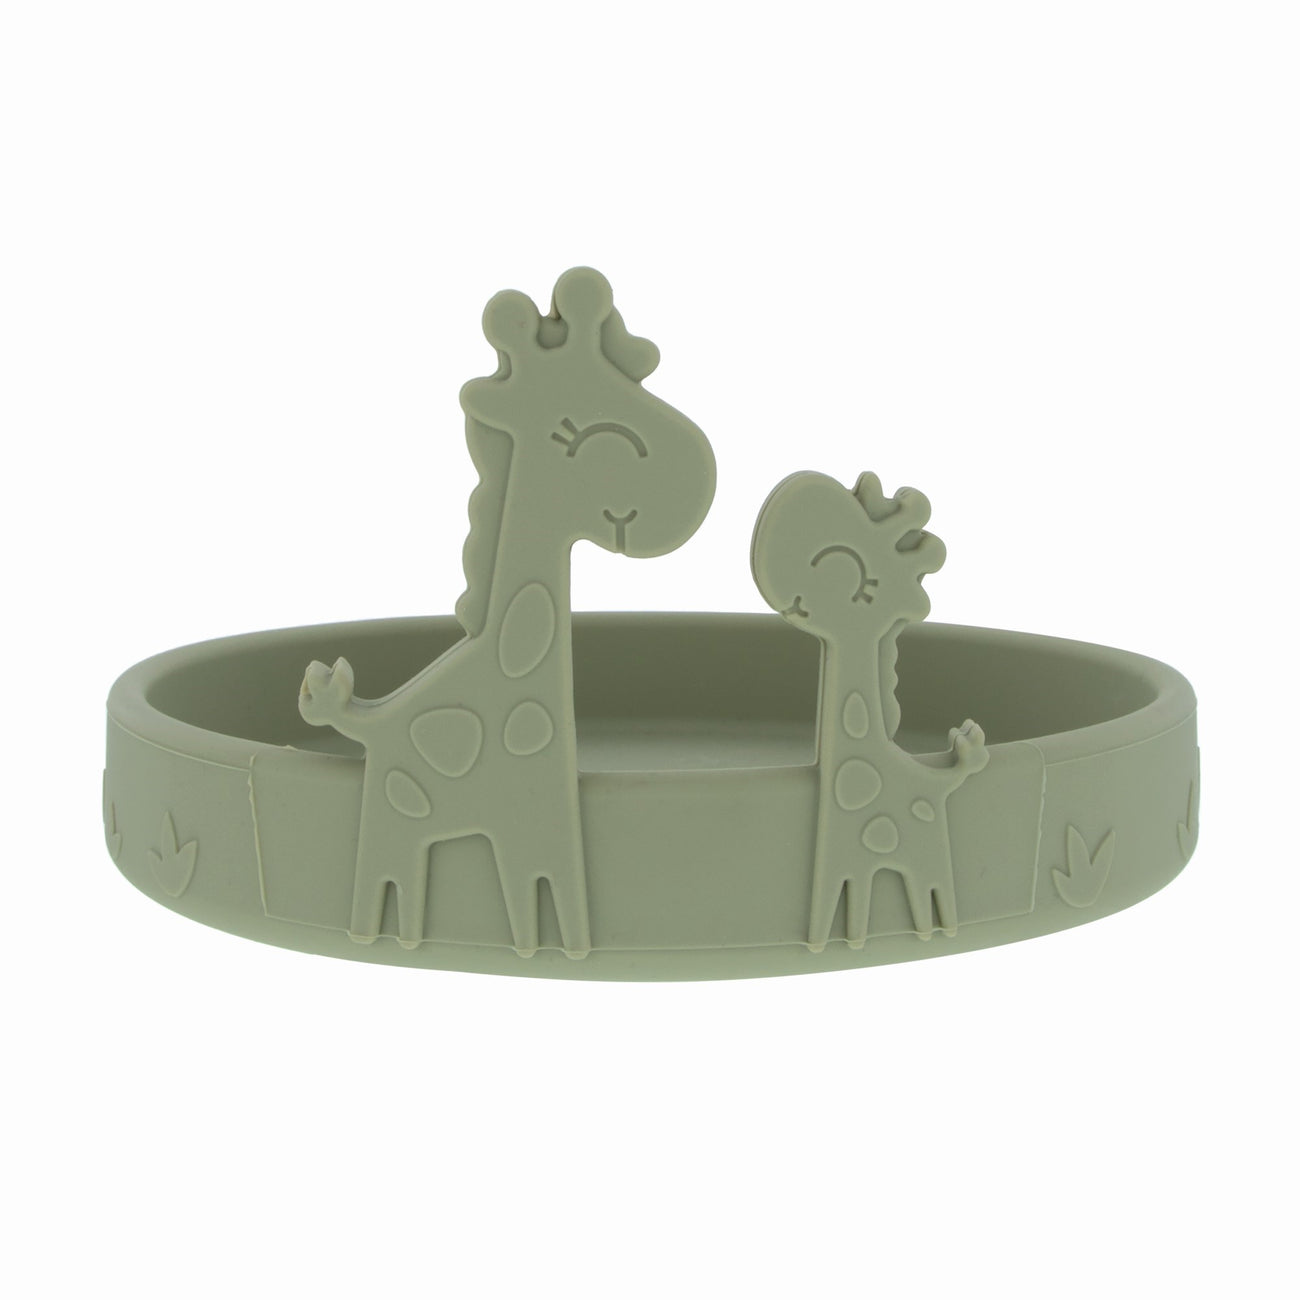 Animal Friends 6-Piece Dinnerware Set - Green Giraffe